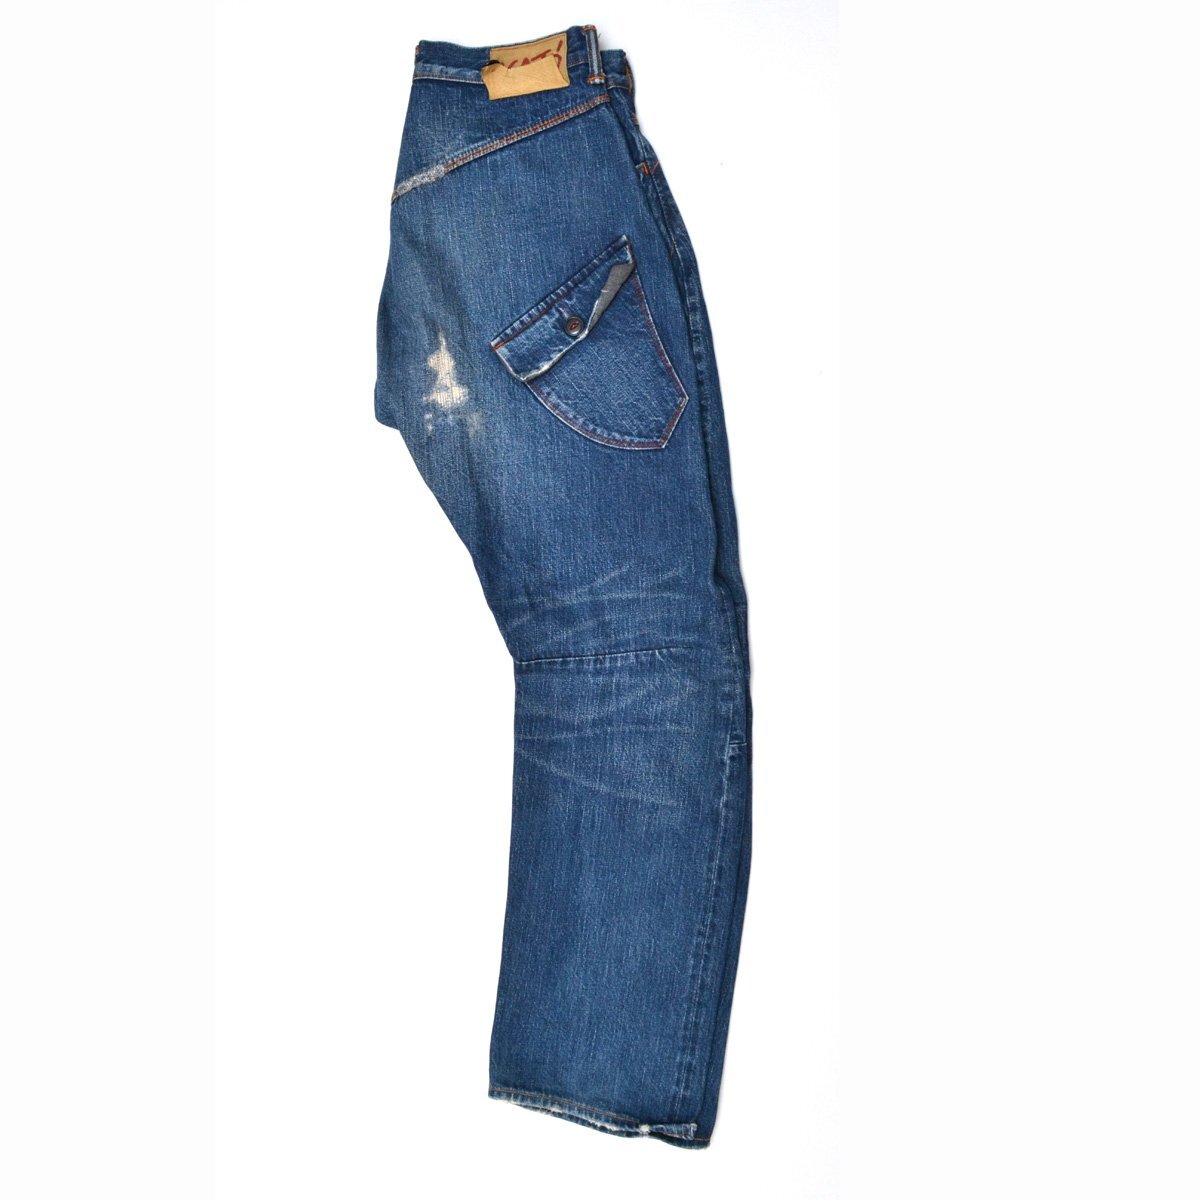 KATO\' Kato повреждение обработка Denim брюки джинсы W31 мужской M785920